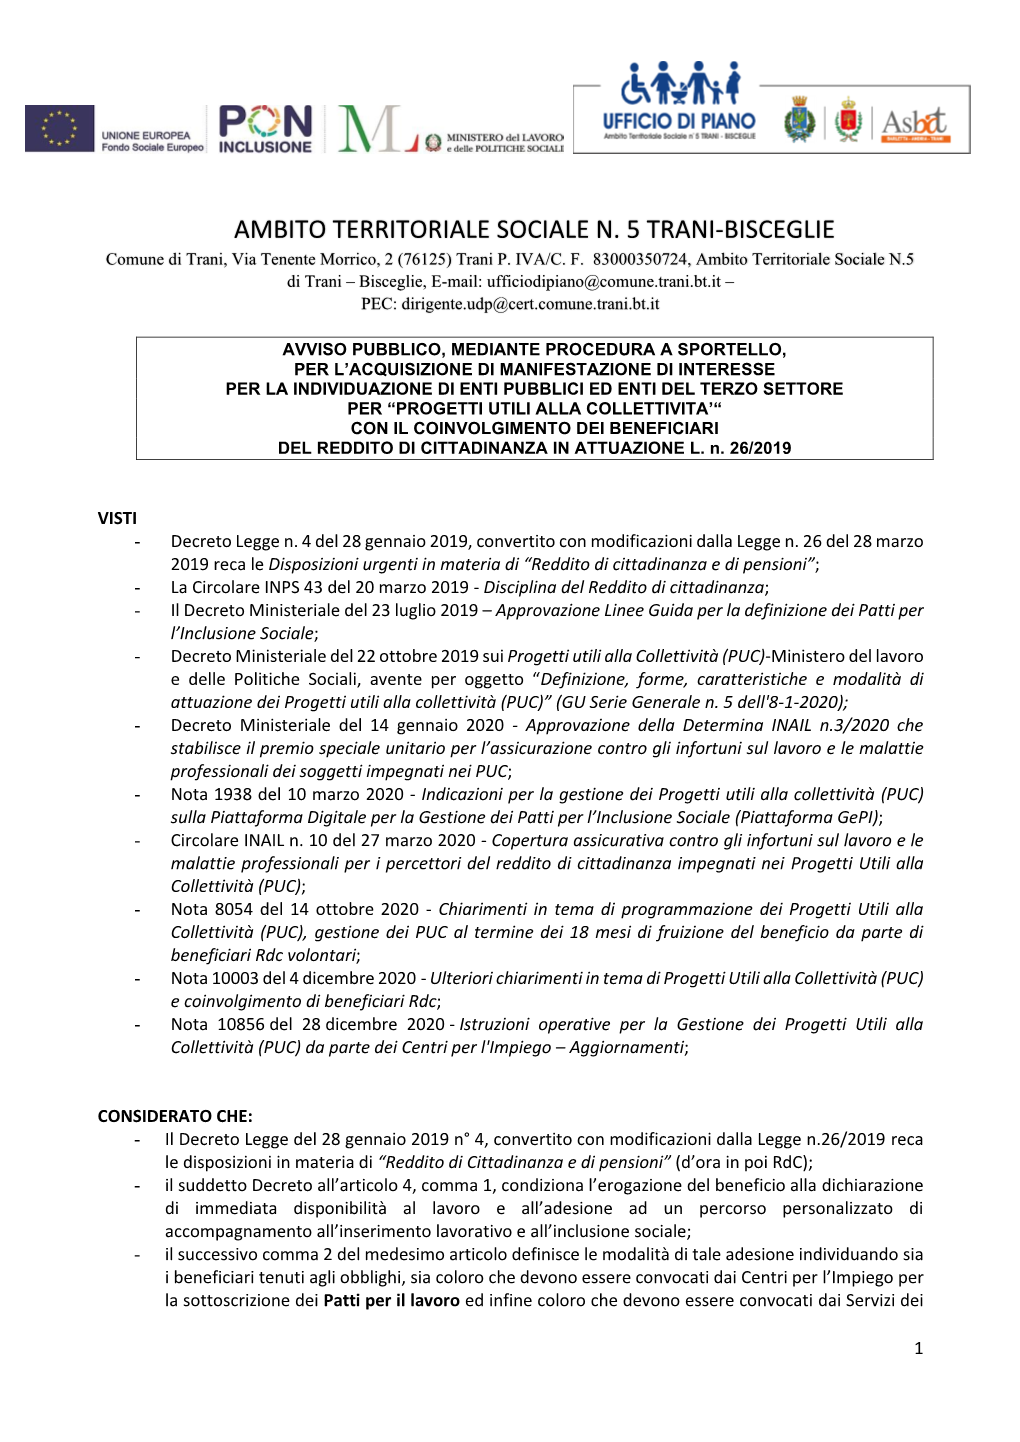 AMBITO TERRITORIALE SOCIALE N. 5 TRANI-BISCEGLIE Comune Di Trani, Via Tenente Morrico, 2 (76125) Trani P